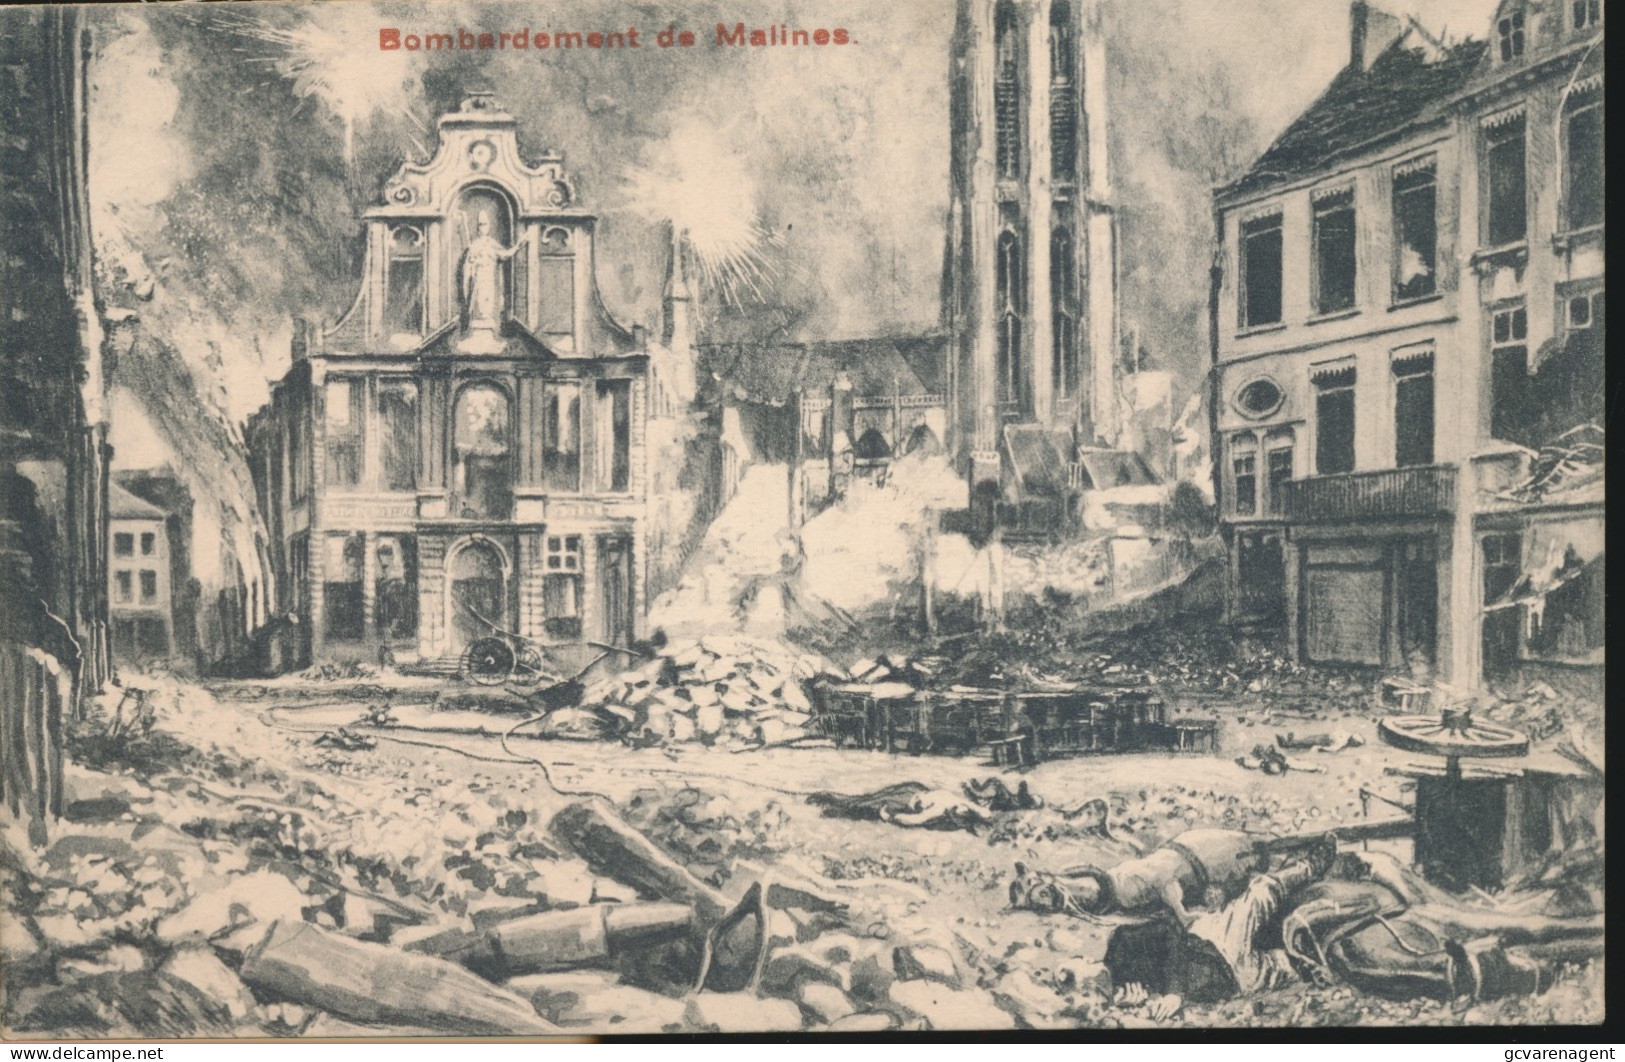 BOMBARDEMENT DE MALINES - Guerre 1914-18